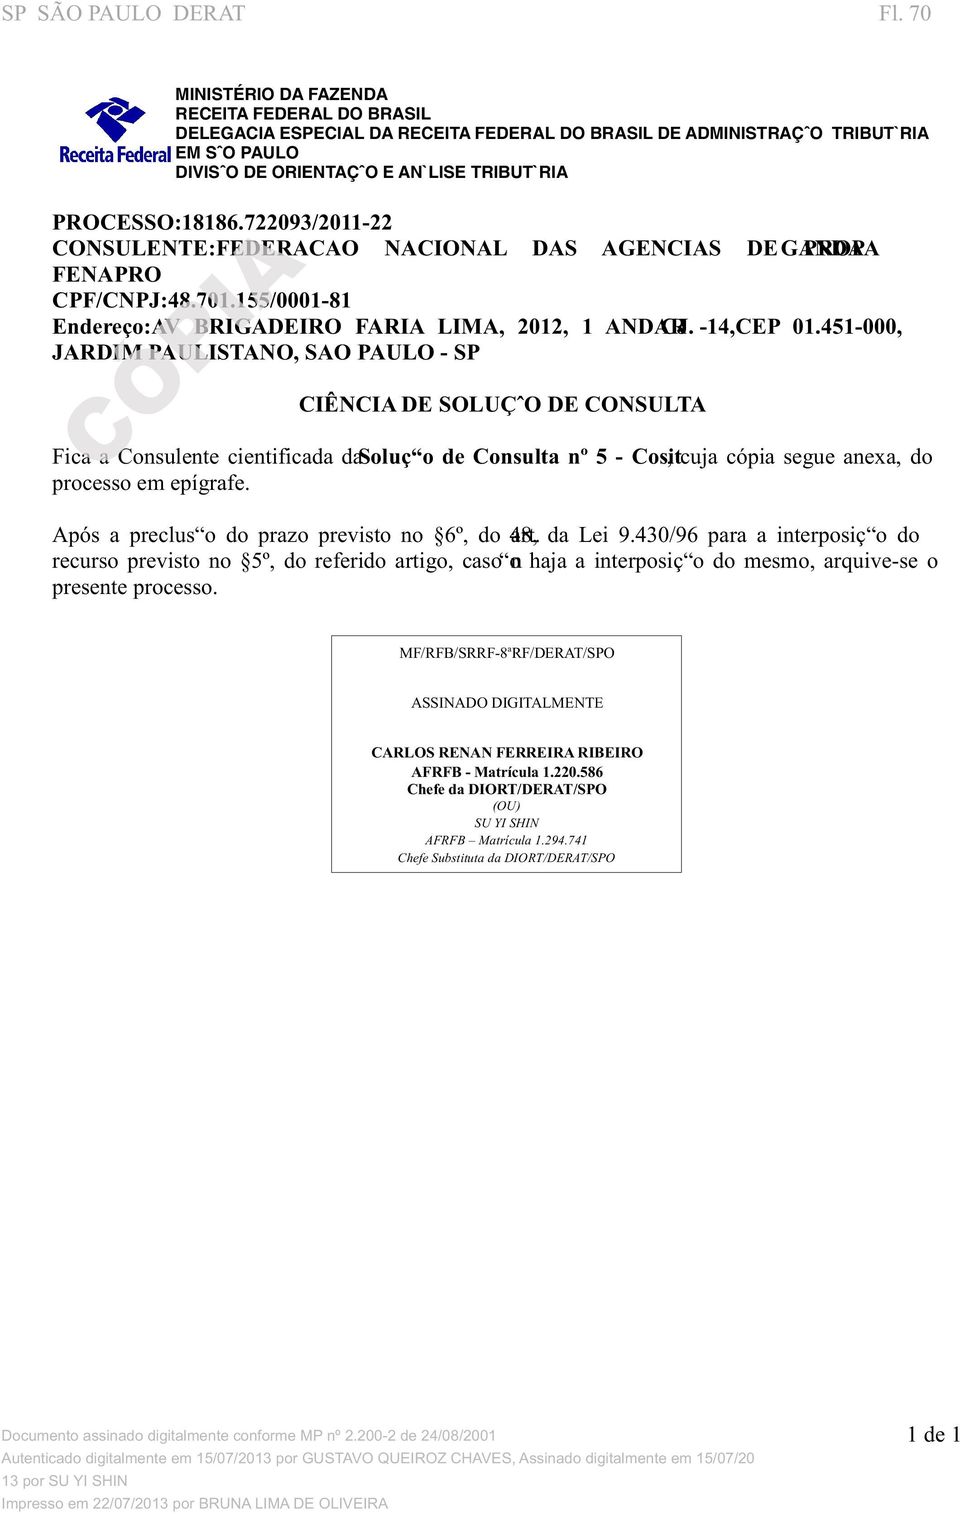 722093/2011-22 CONSULENTE:FEDERACAO NACIONAL DAS AGENCIAS DE GAPNRDOAP A FENAPRO CPF/CNPJ:48.701.155/0001-81 Endereço:AV BRIGADEIRO FARIA LIMA, 2012, 1 ANDACRJ. -14,CEP 01.